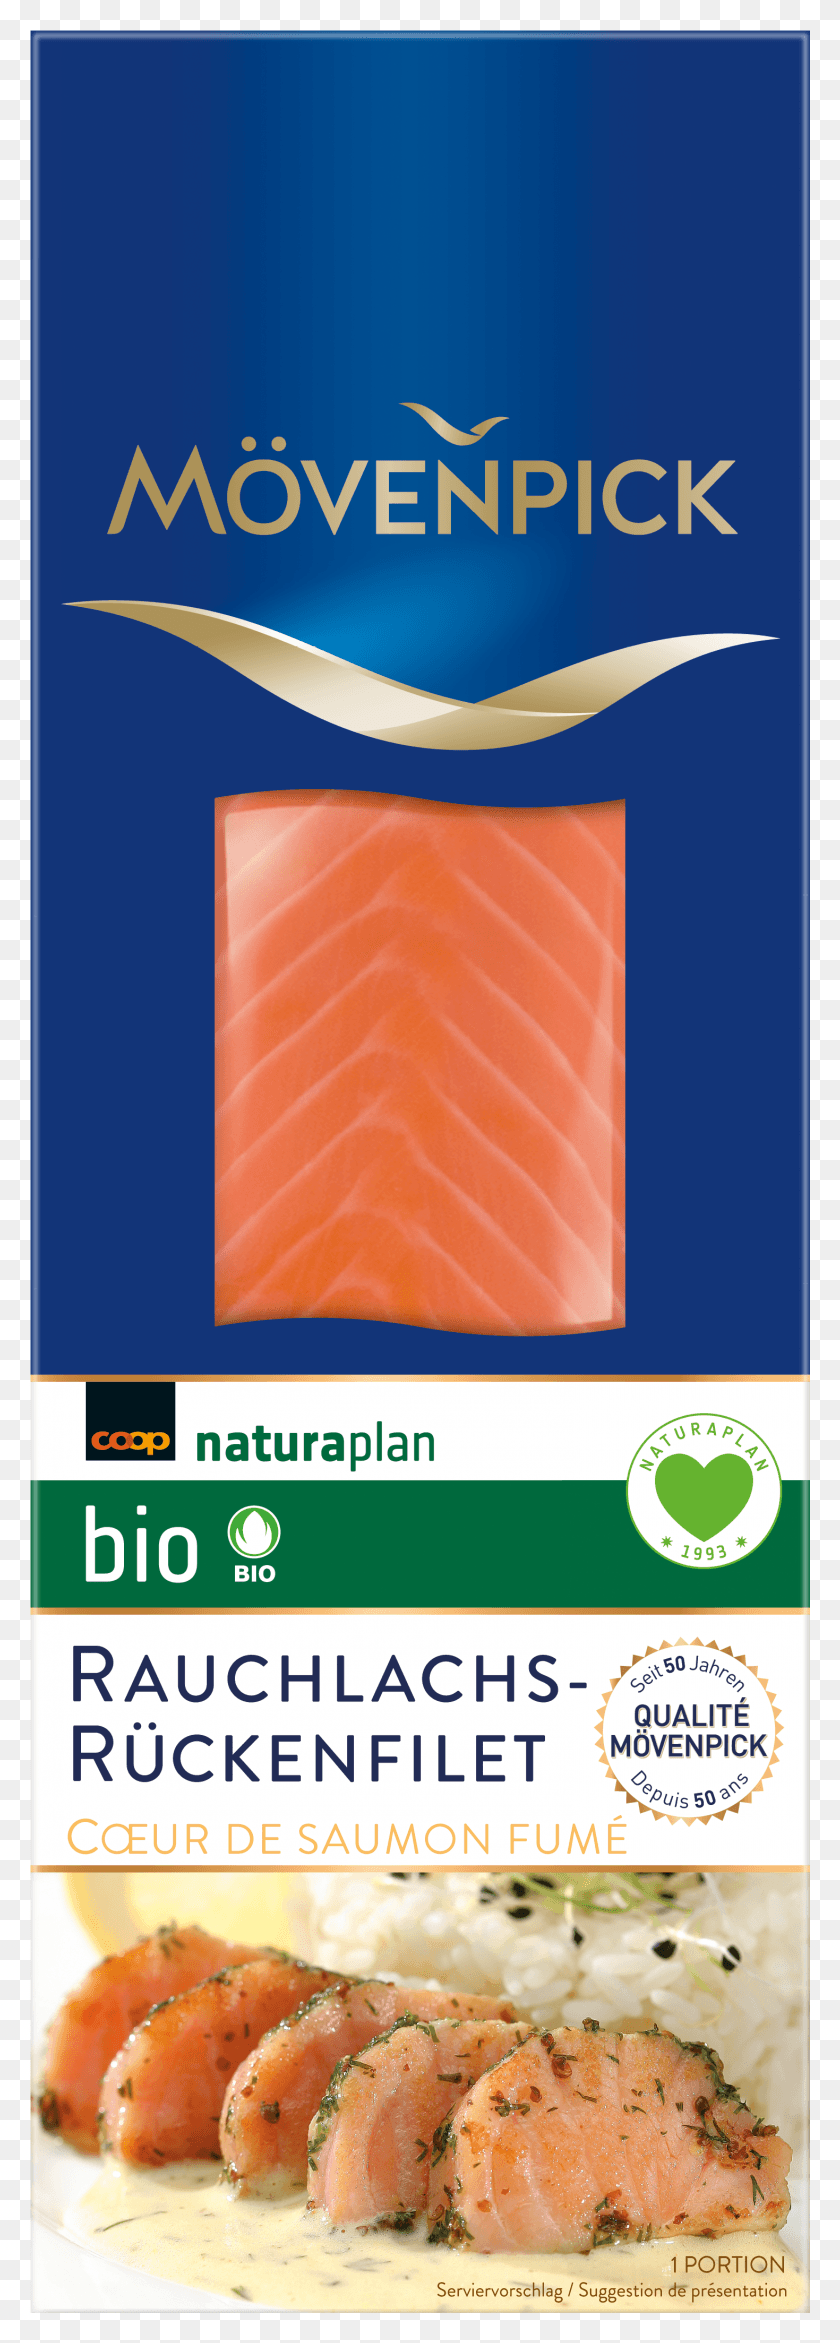 1469x4301 Organic Smoked Salmon Loin Bun HD PNG Download